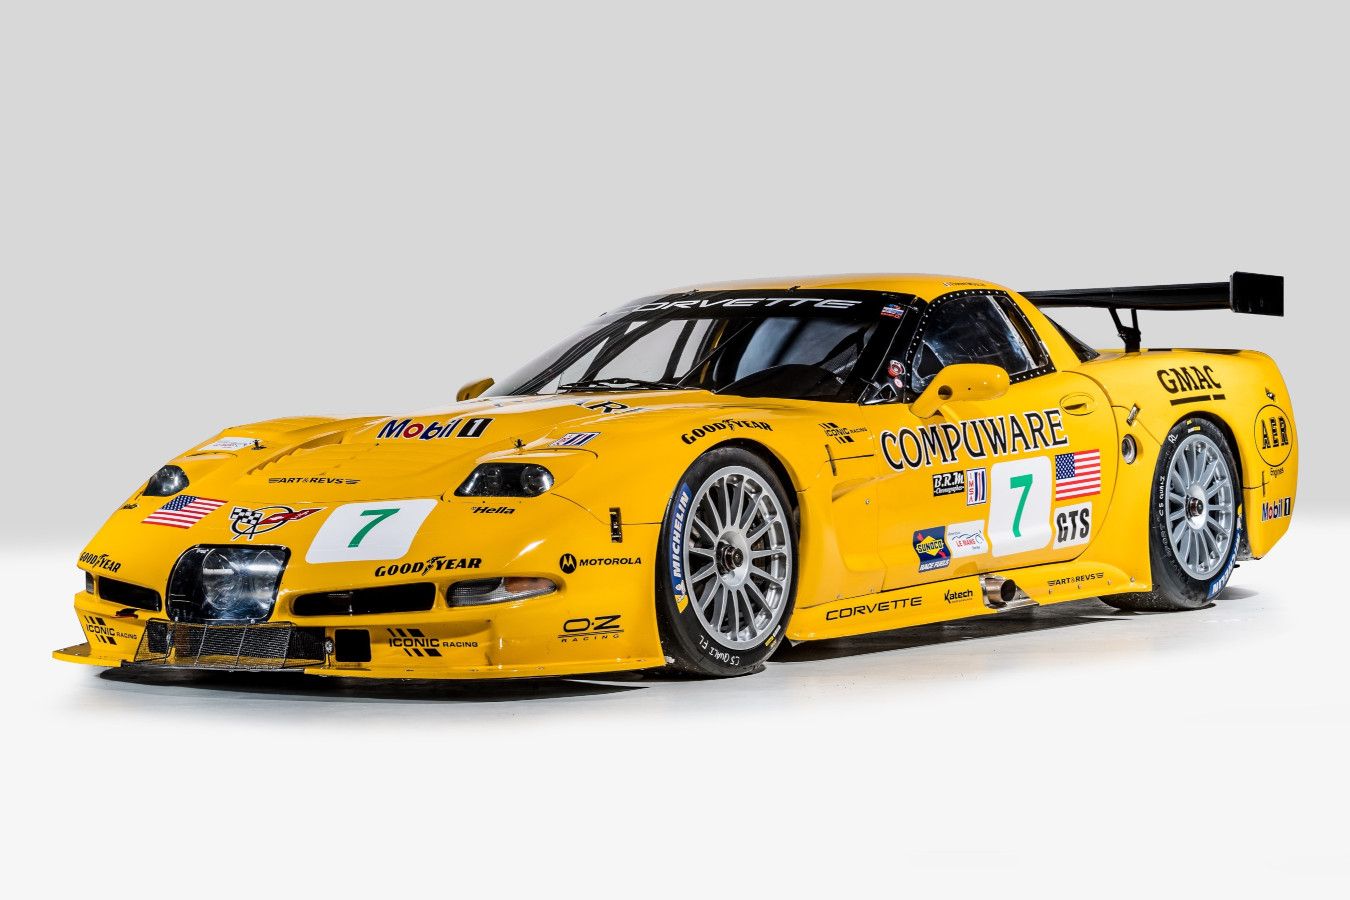 Редкий Chevrolet Corvette C5-R выставлен на продажу. Он выиграл 31 гонку и 4 чемпионата